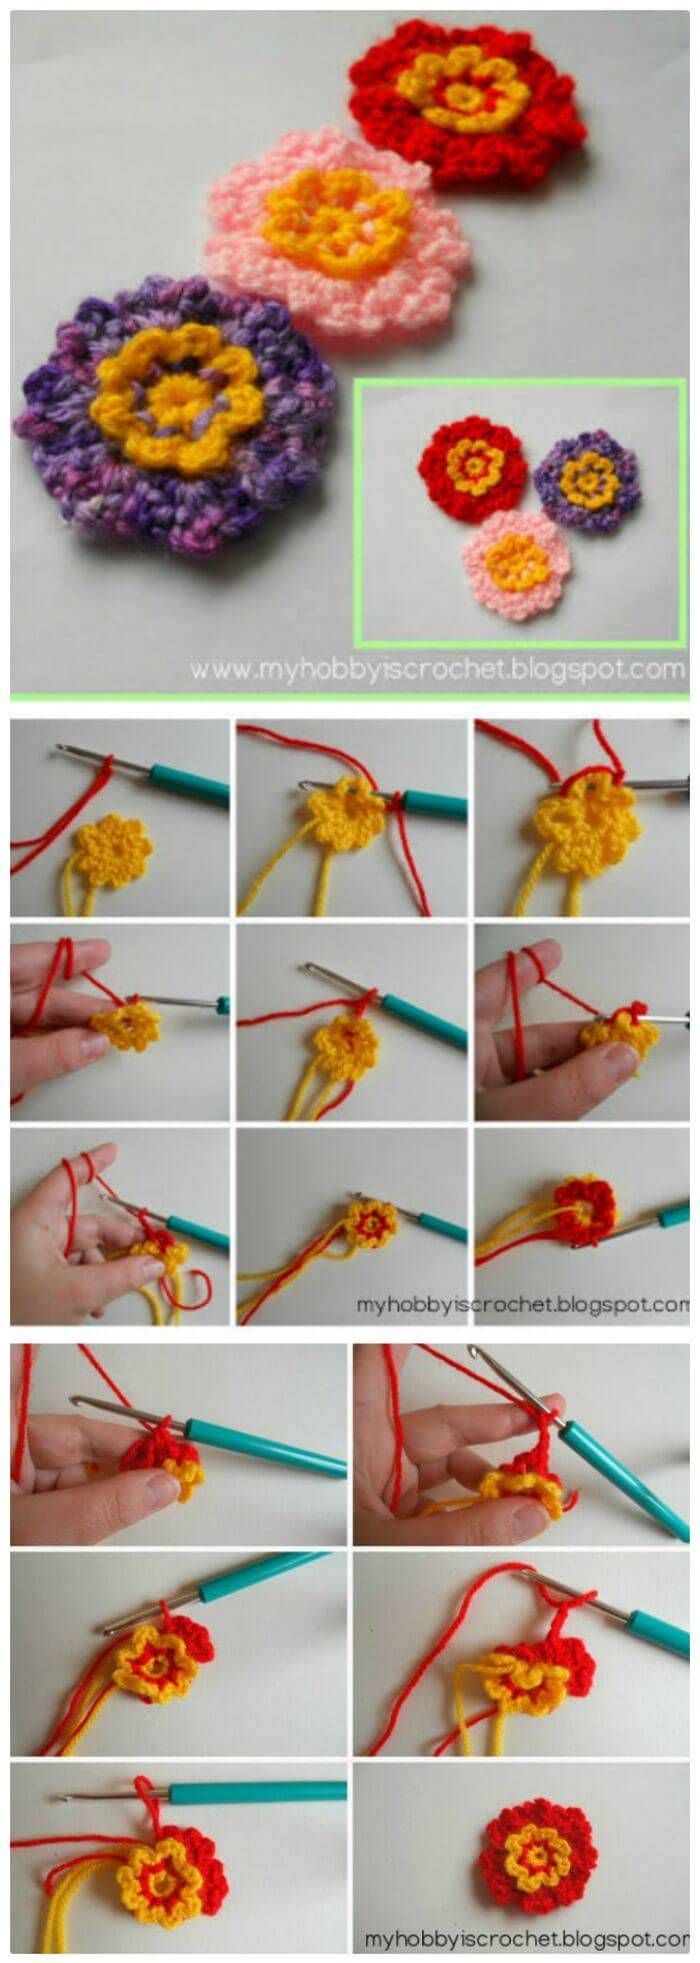 free crochet flower pattern, Free fast easy crochet patterns for beautiful flowers!